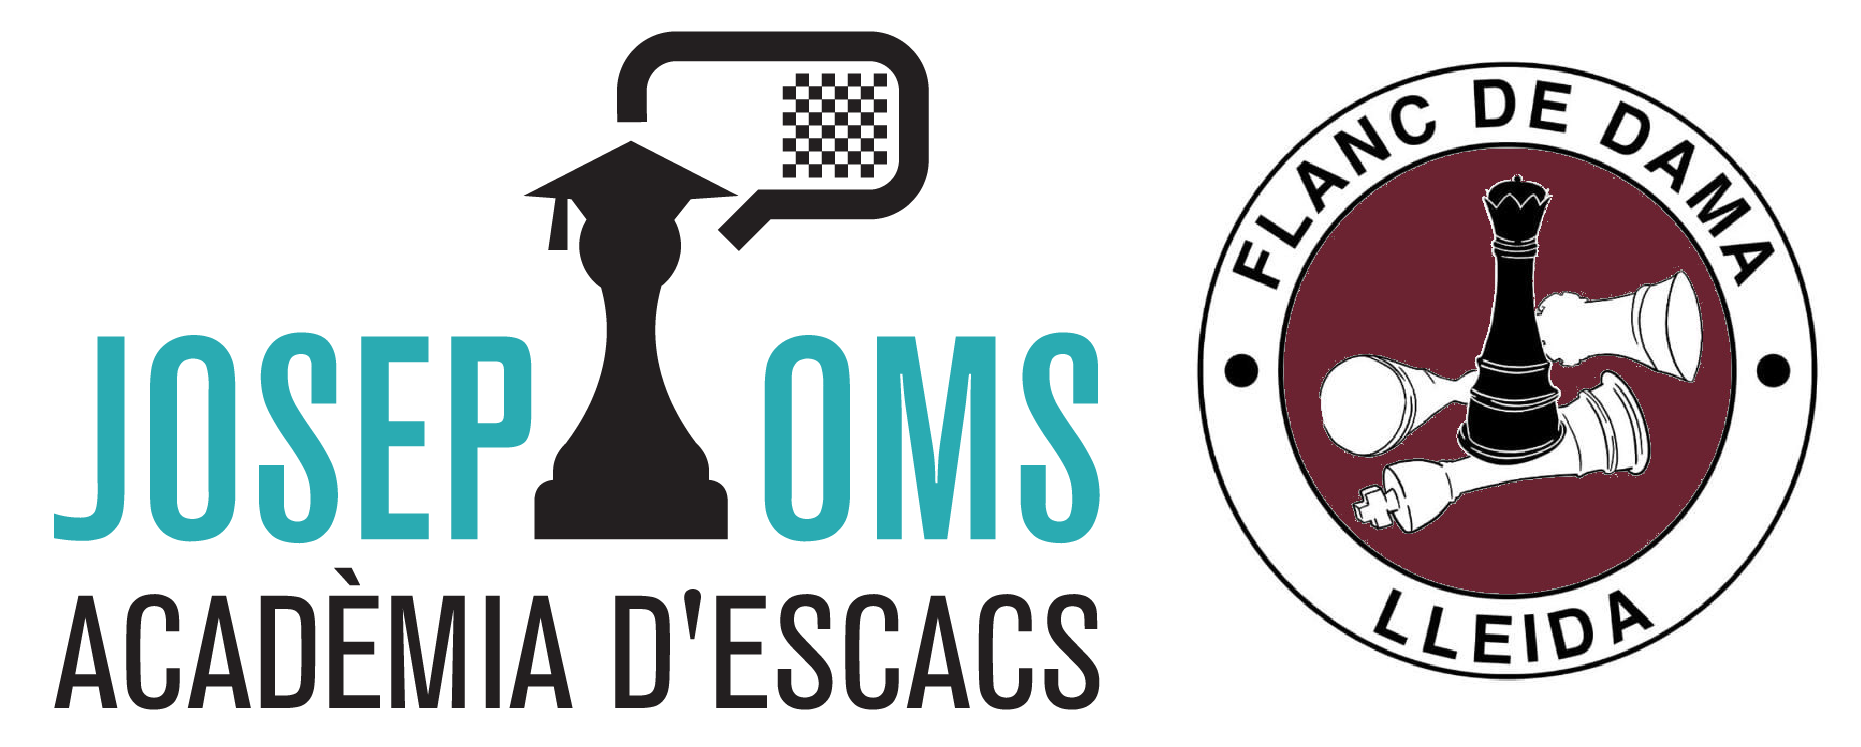 Escacs_Oms_Lleida